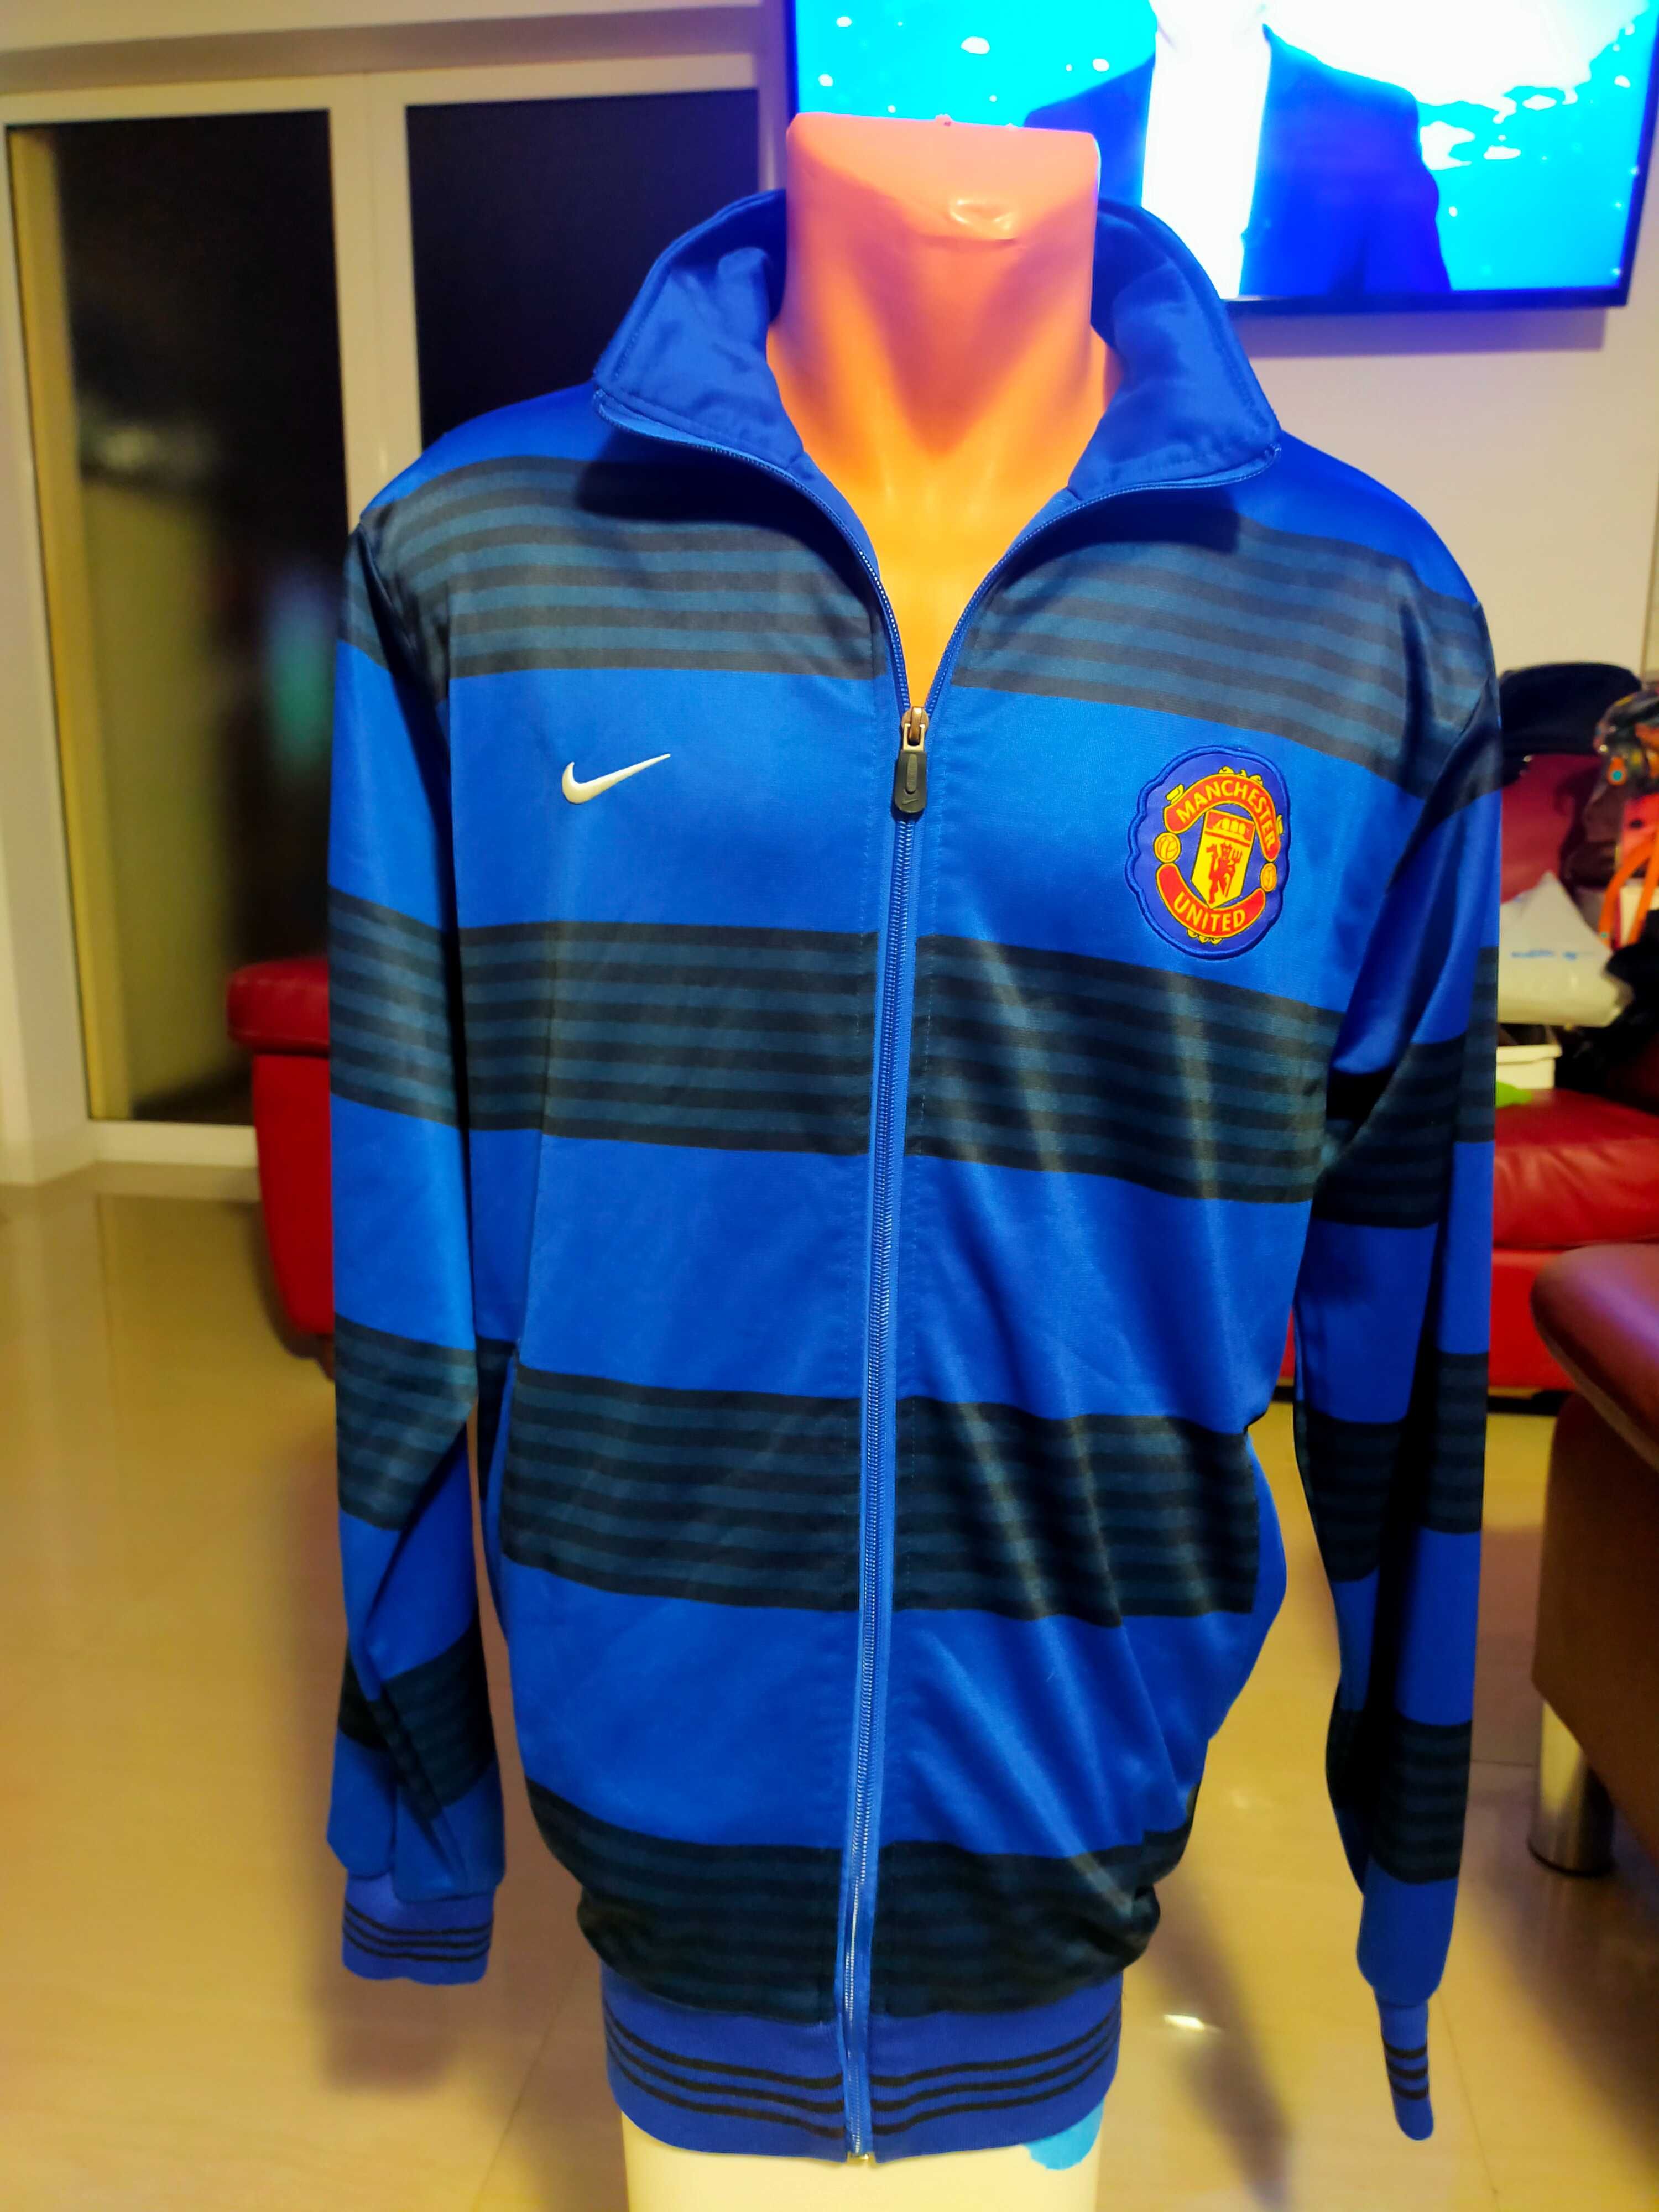 Vând bluza Nike Manchester United mărimea M